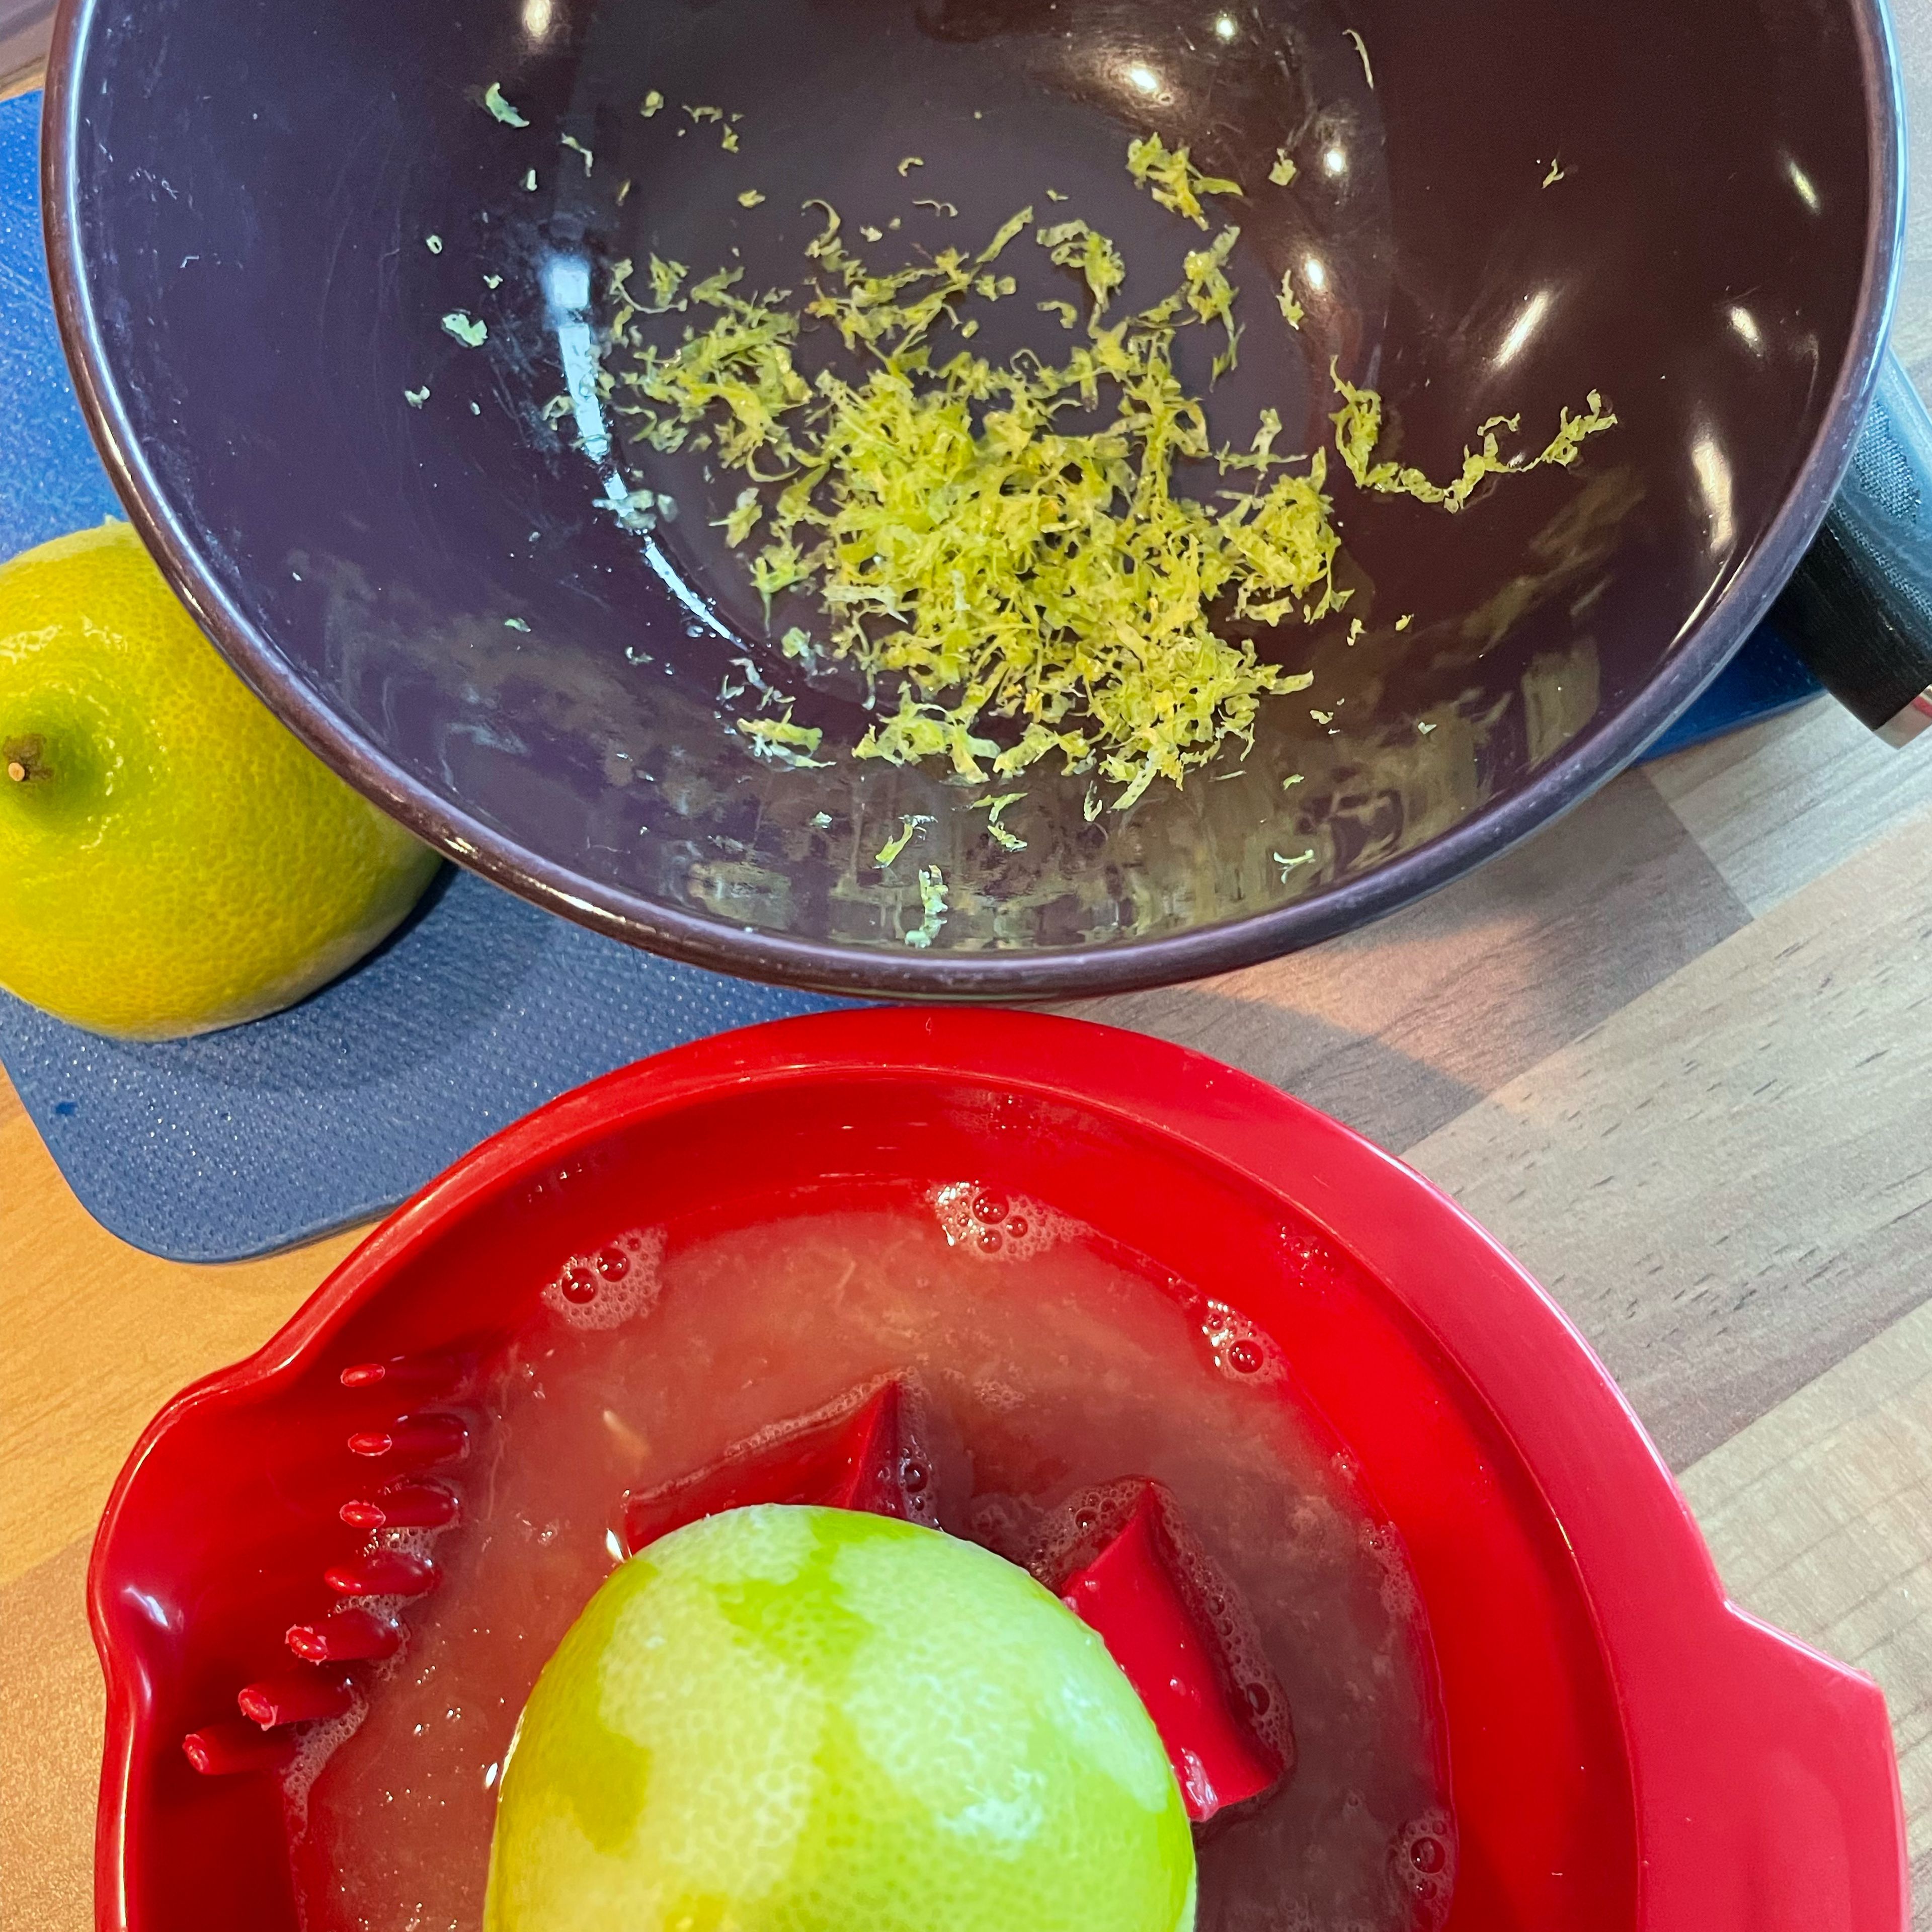 In der Zwischenzeit Schale von der Zitrone abreiben und den Saft auspressen. Schnittlauch waschen und in feine Ringe schneiden